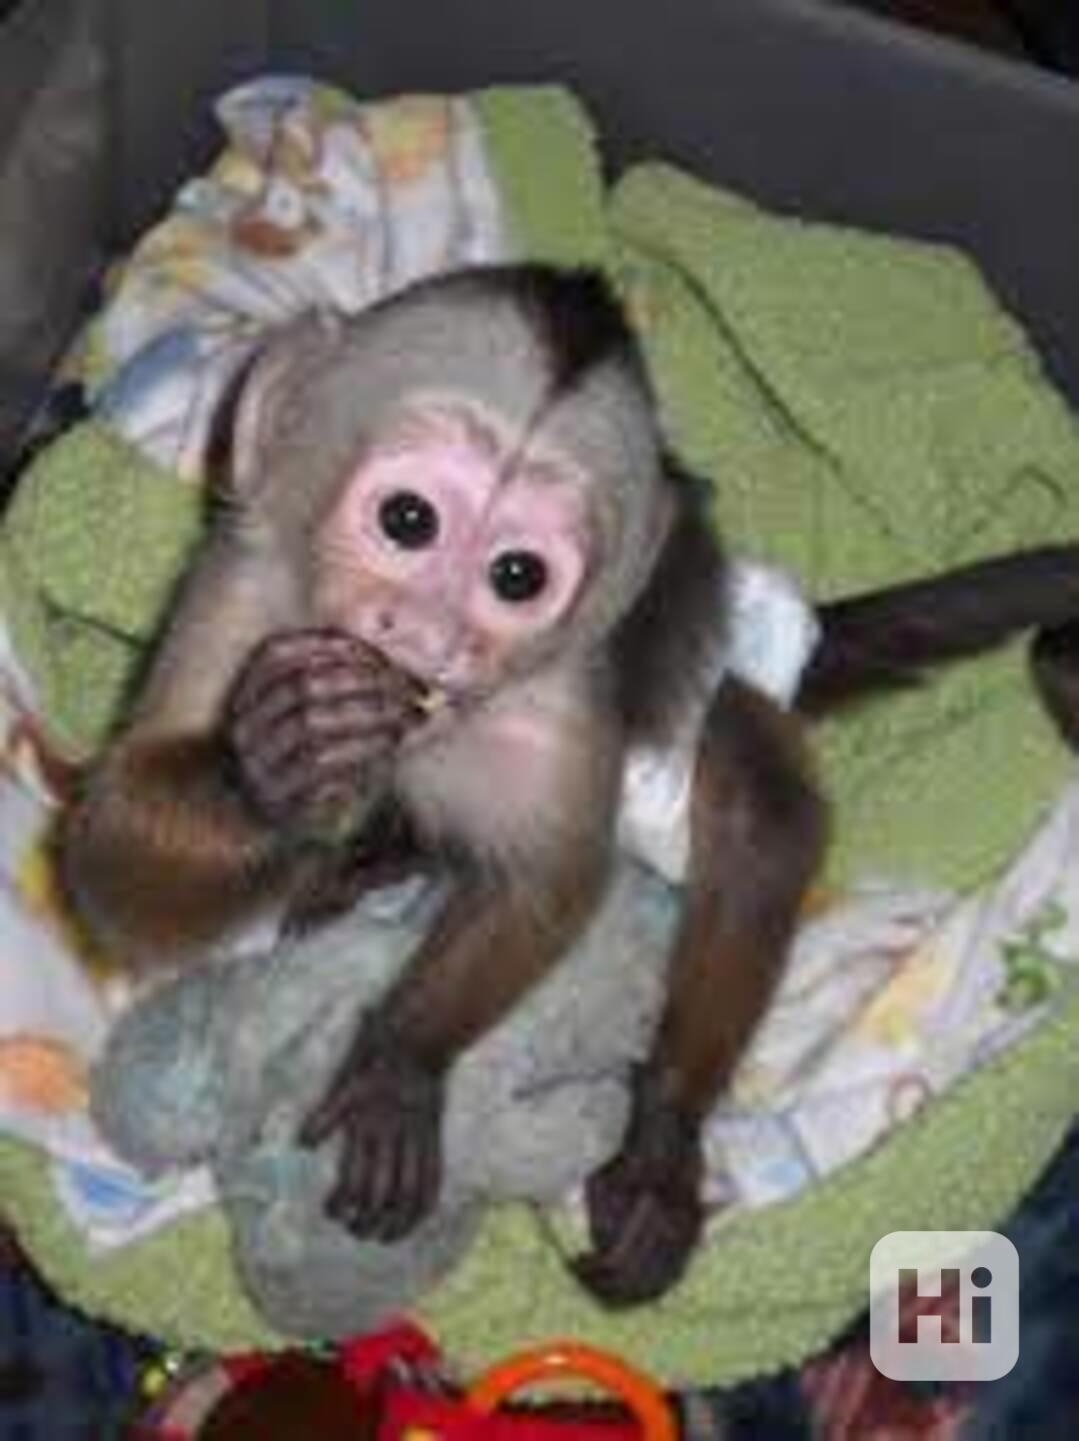 zdravé kapucínské opice k adopci